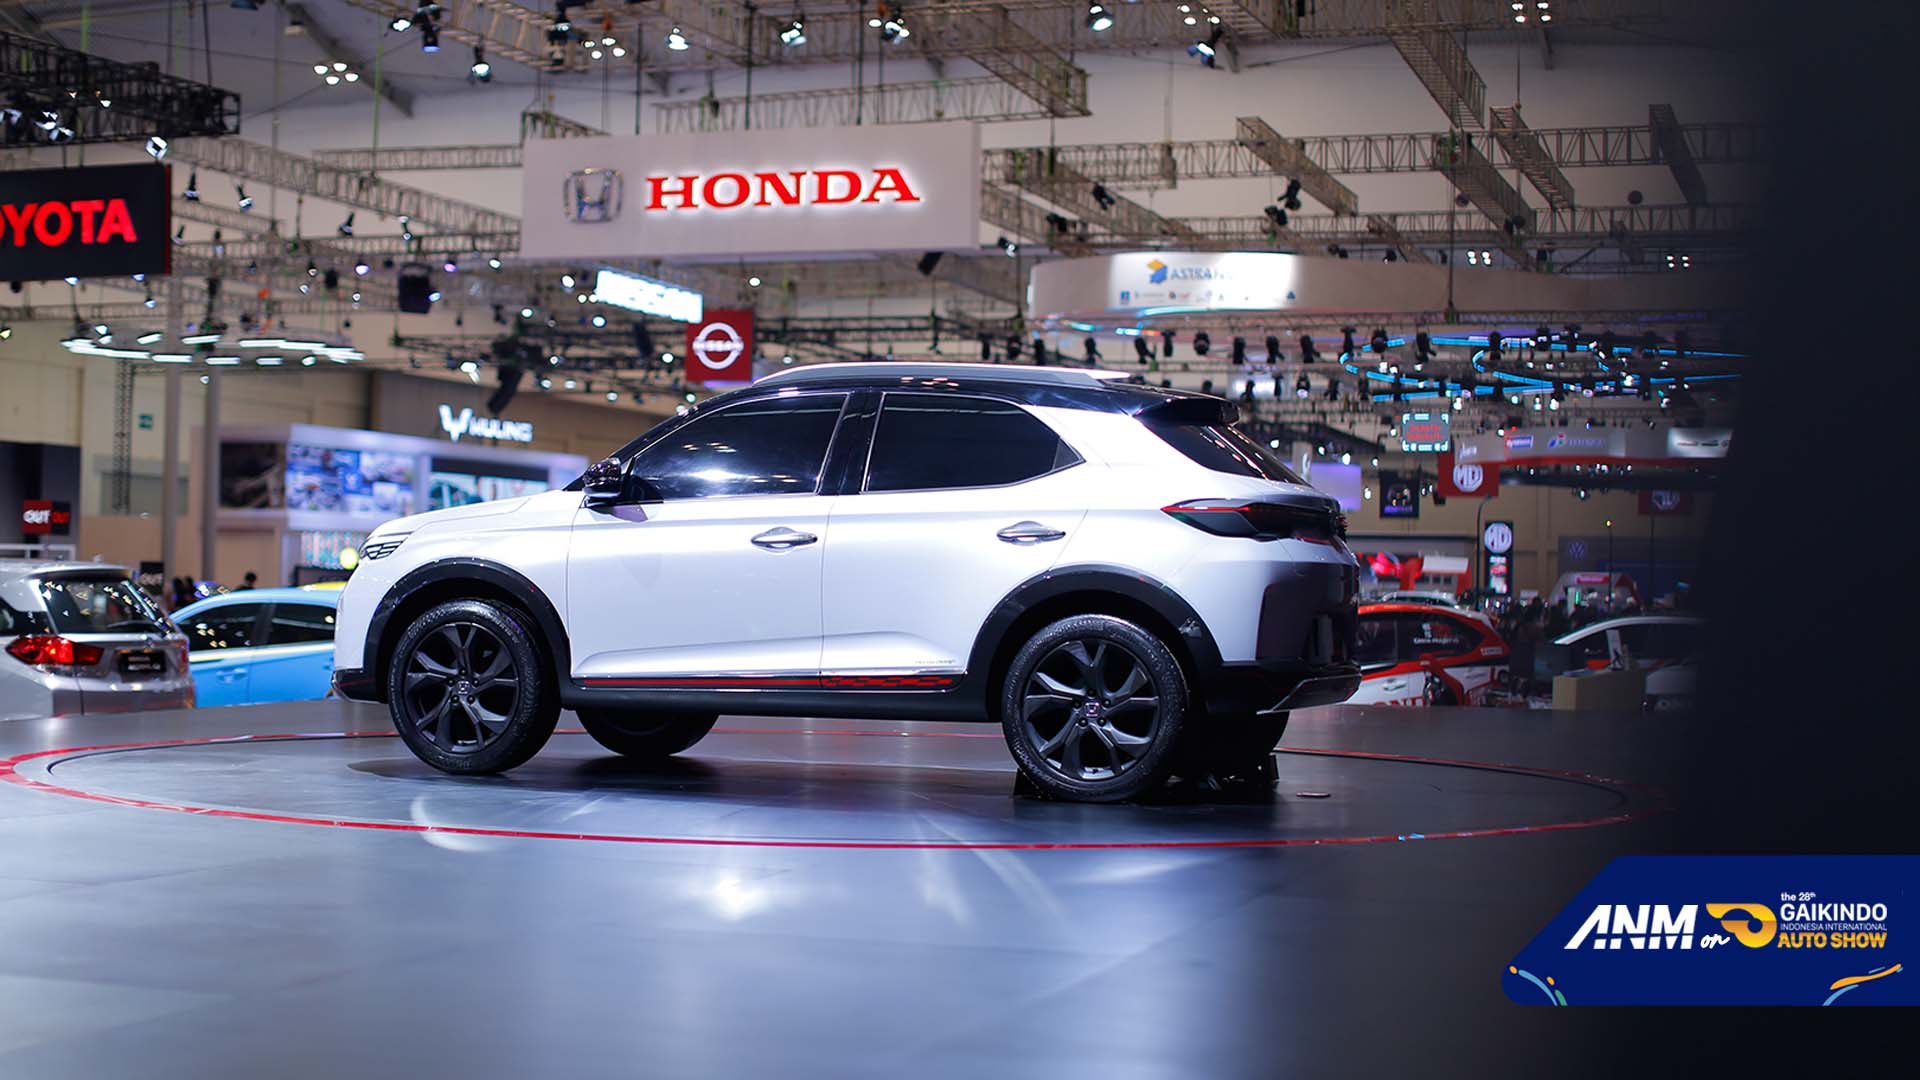 Berita, Spek Honda SUV RS Concept: GIIAS 2021 : Foto Lengkap Honda SUV RS Concept, Emang Ganteng!